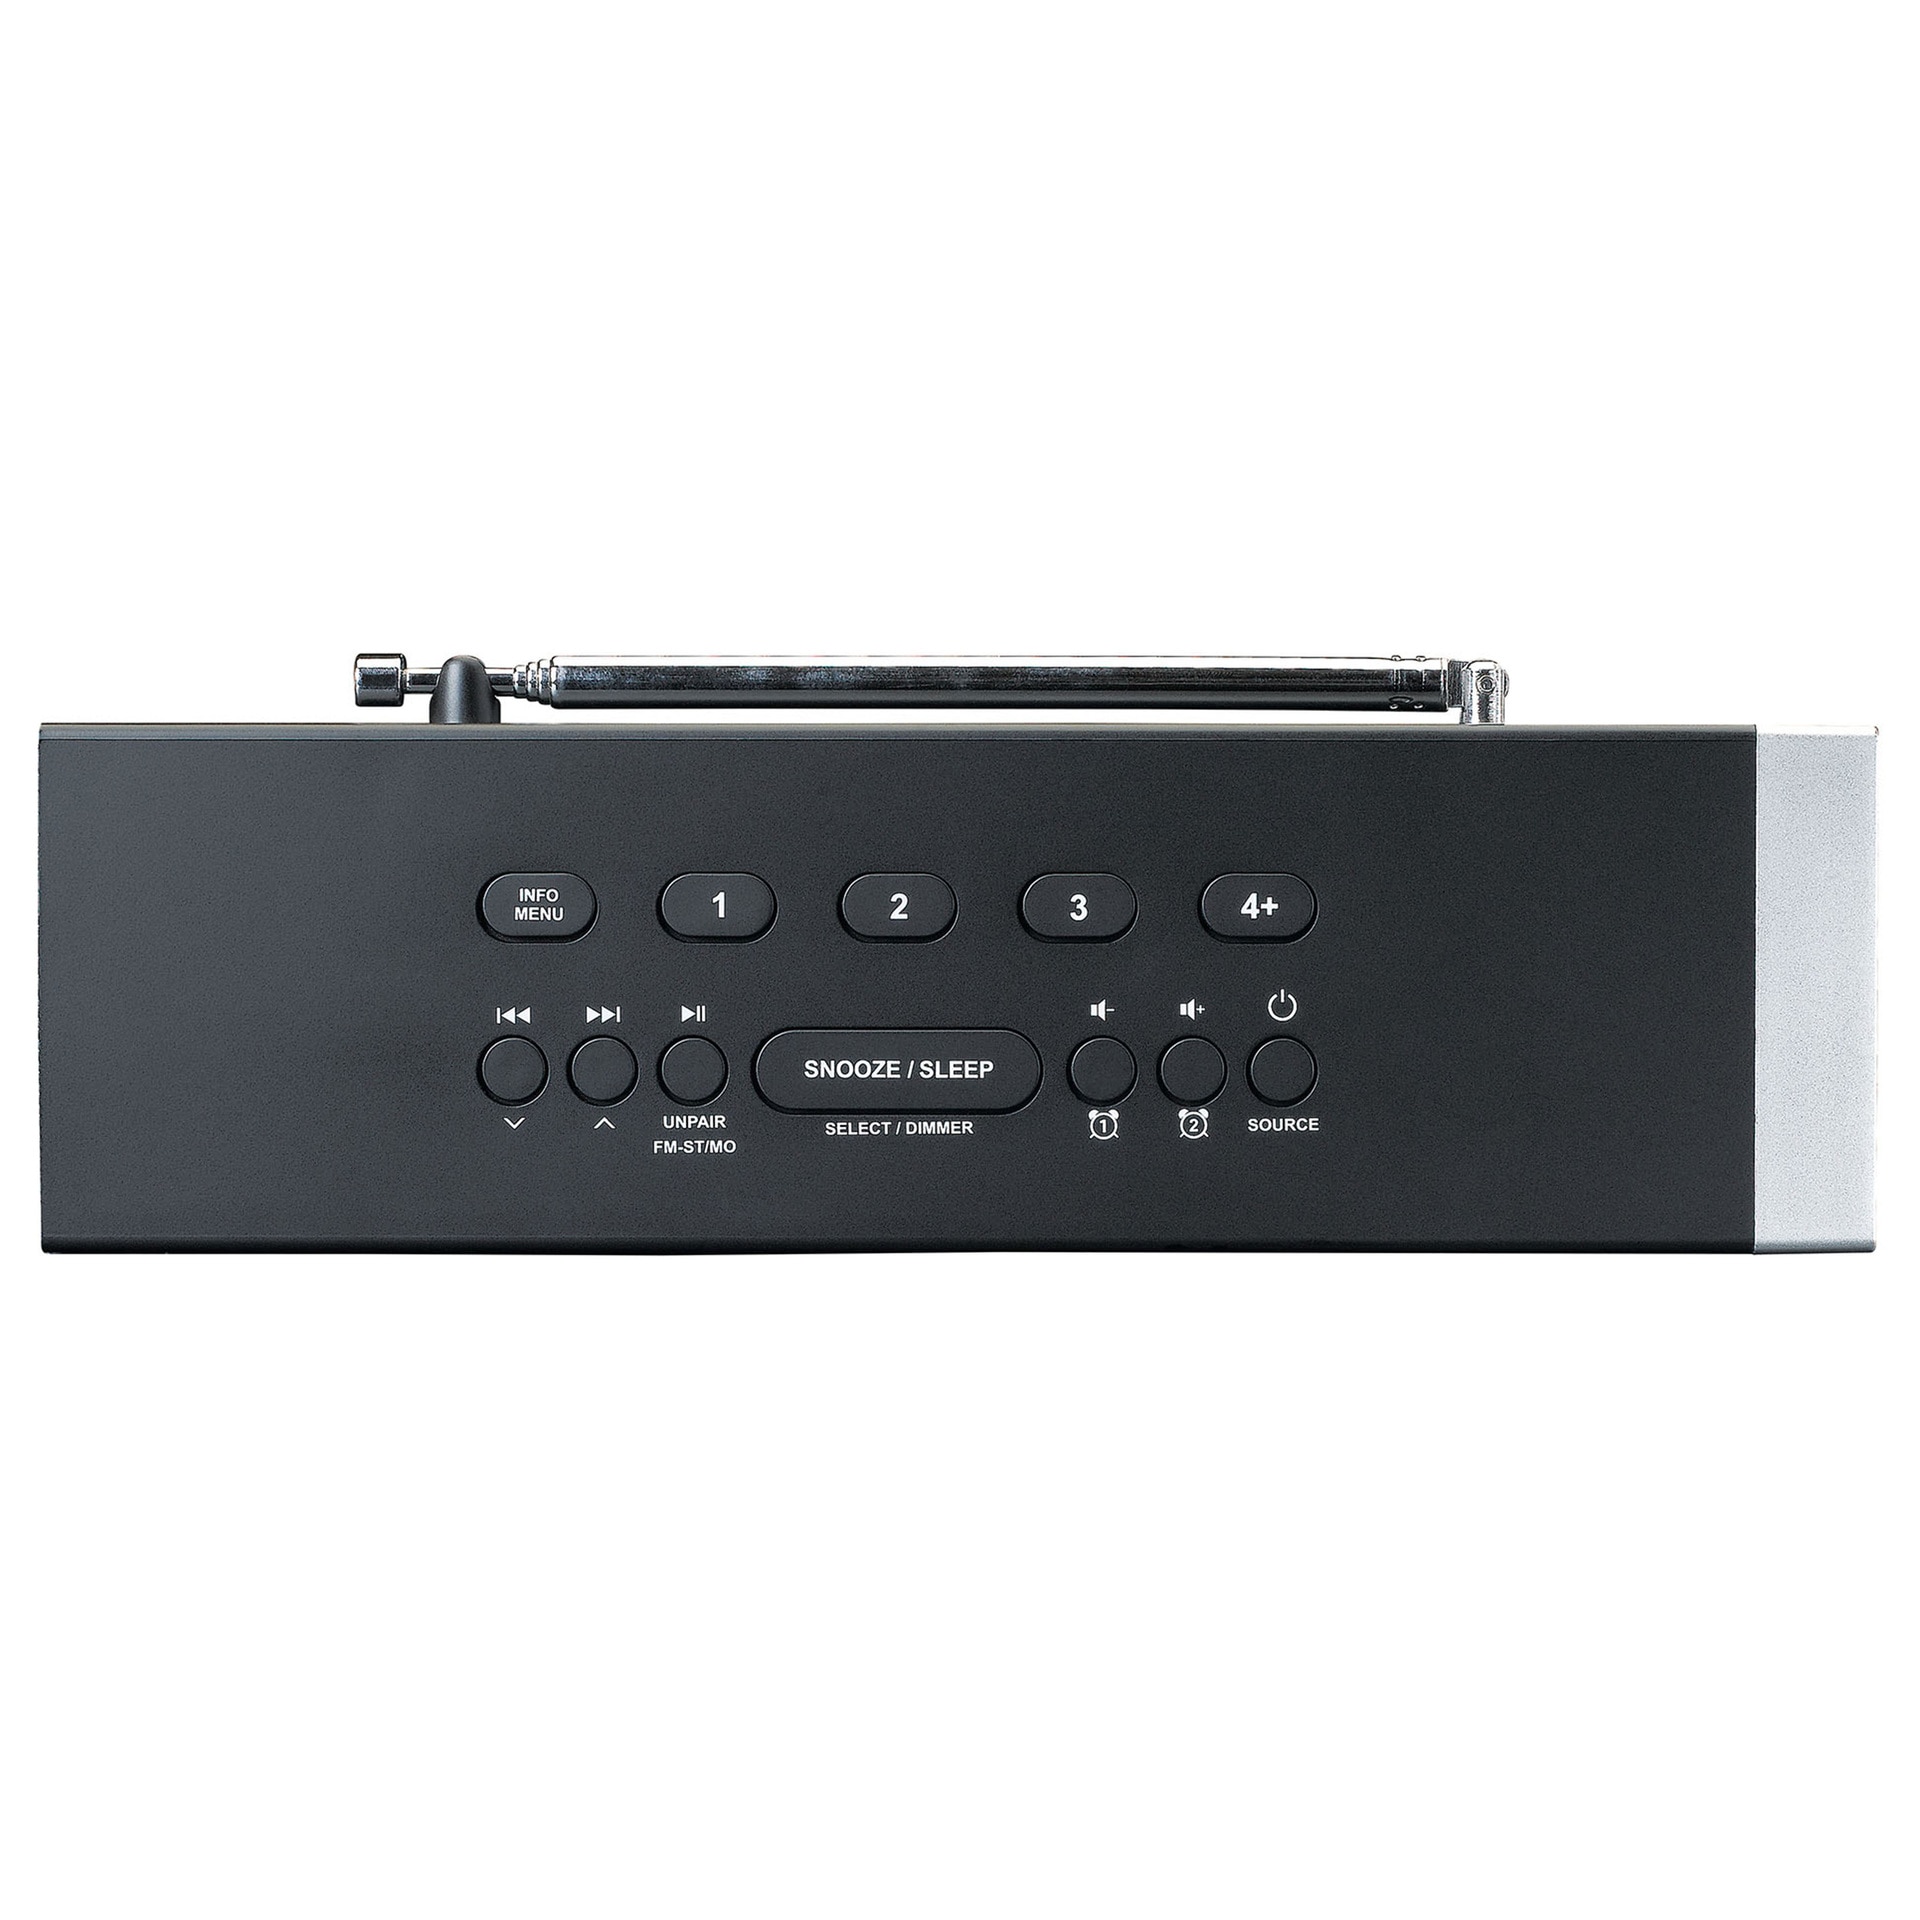 Lenco Digitalradio (DAB+) »CR-640BK DAB+/FM Stereo Uhrenradio mit BT und 2x4W RMS«, (Digitalradio (DAB+) 4 W)